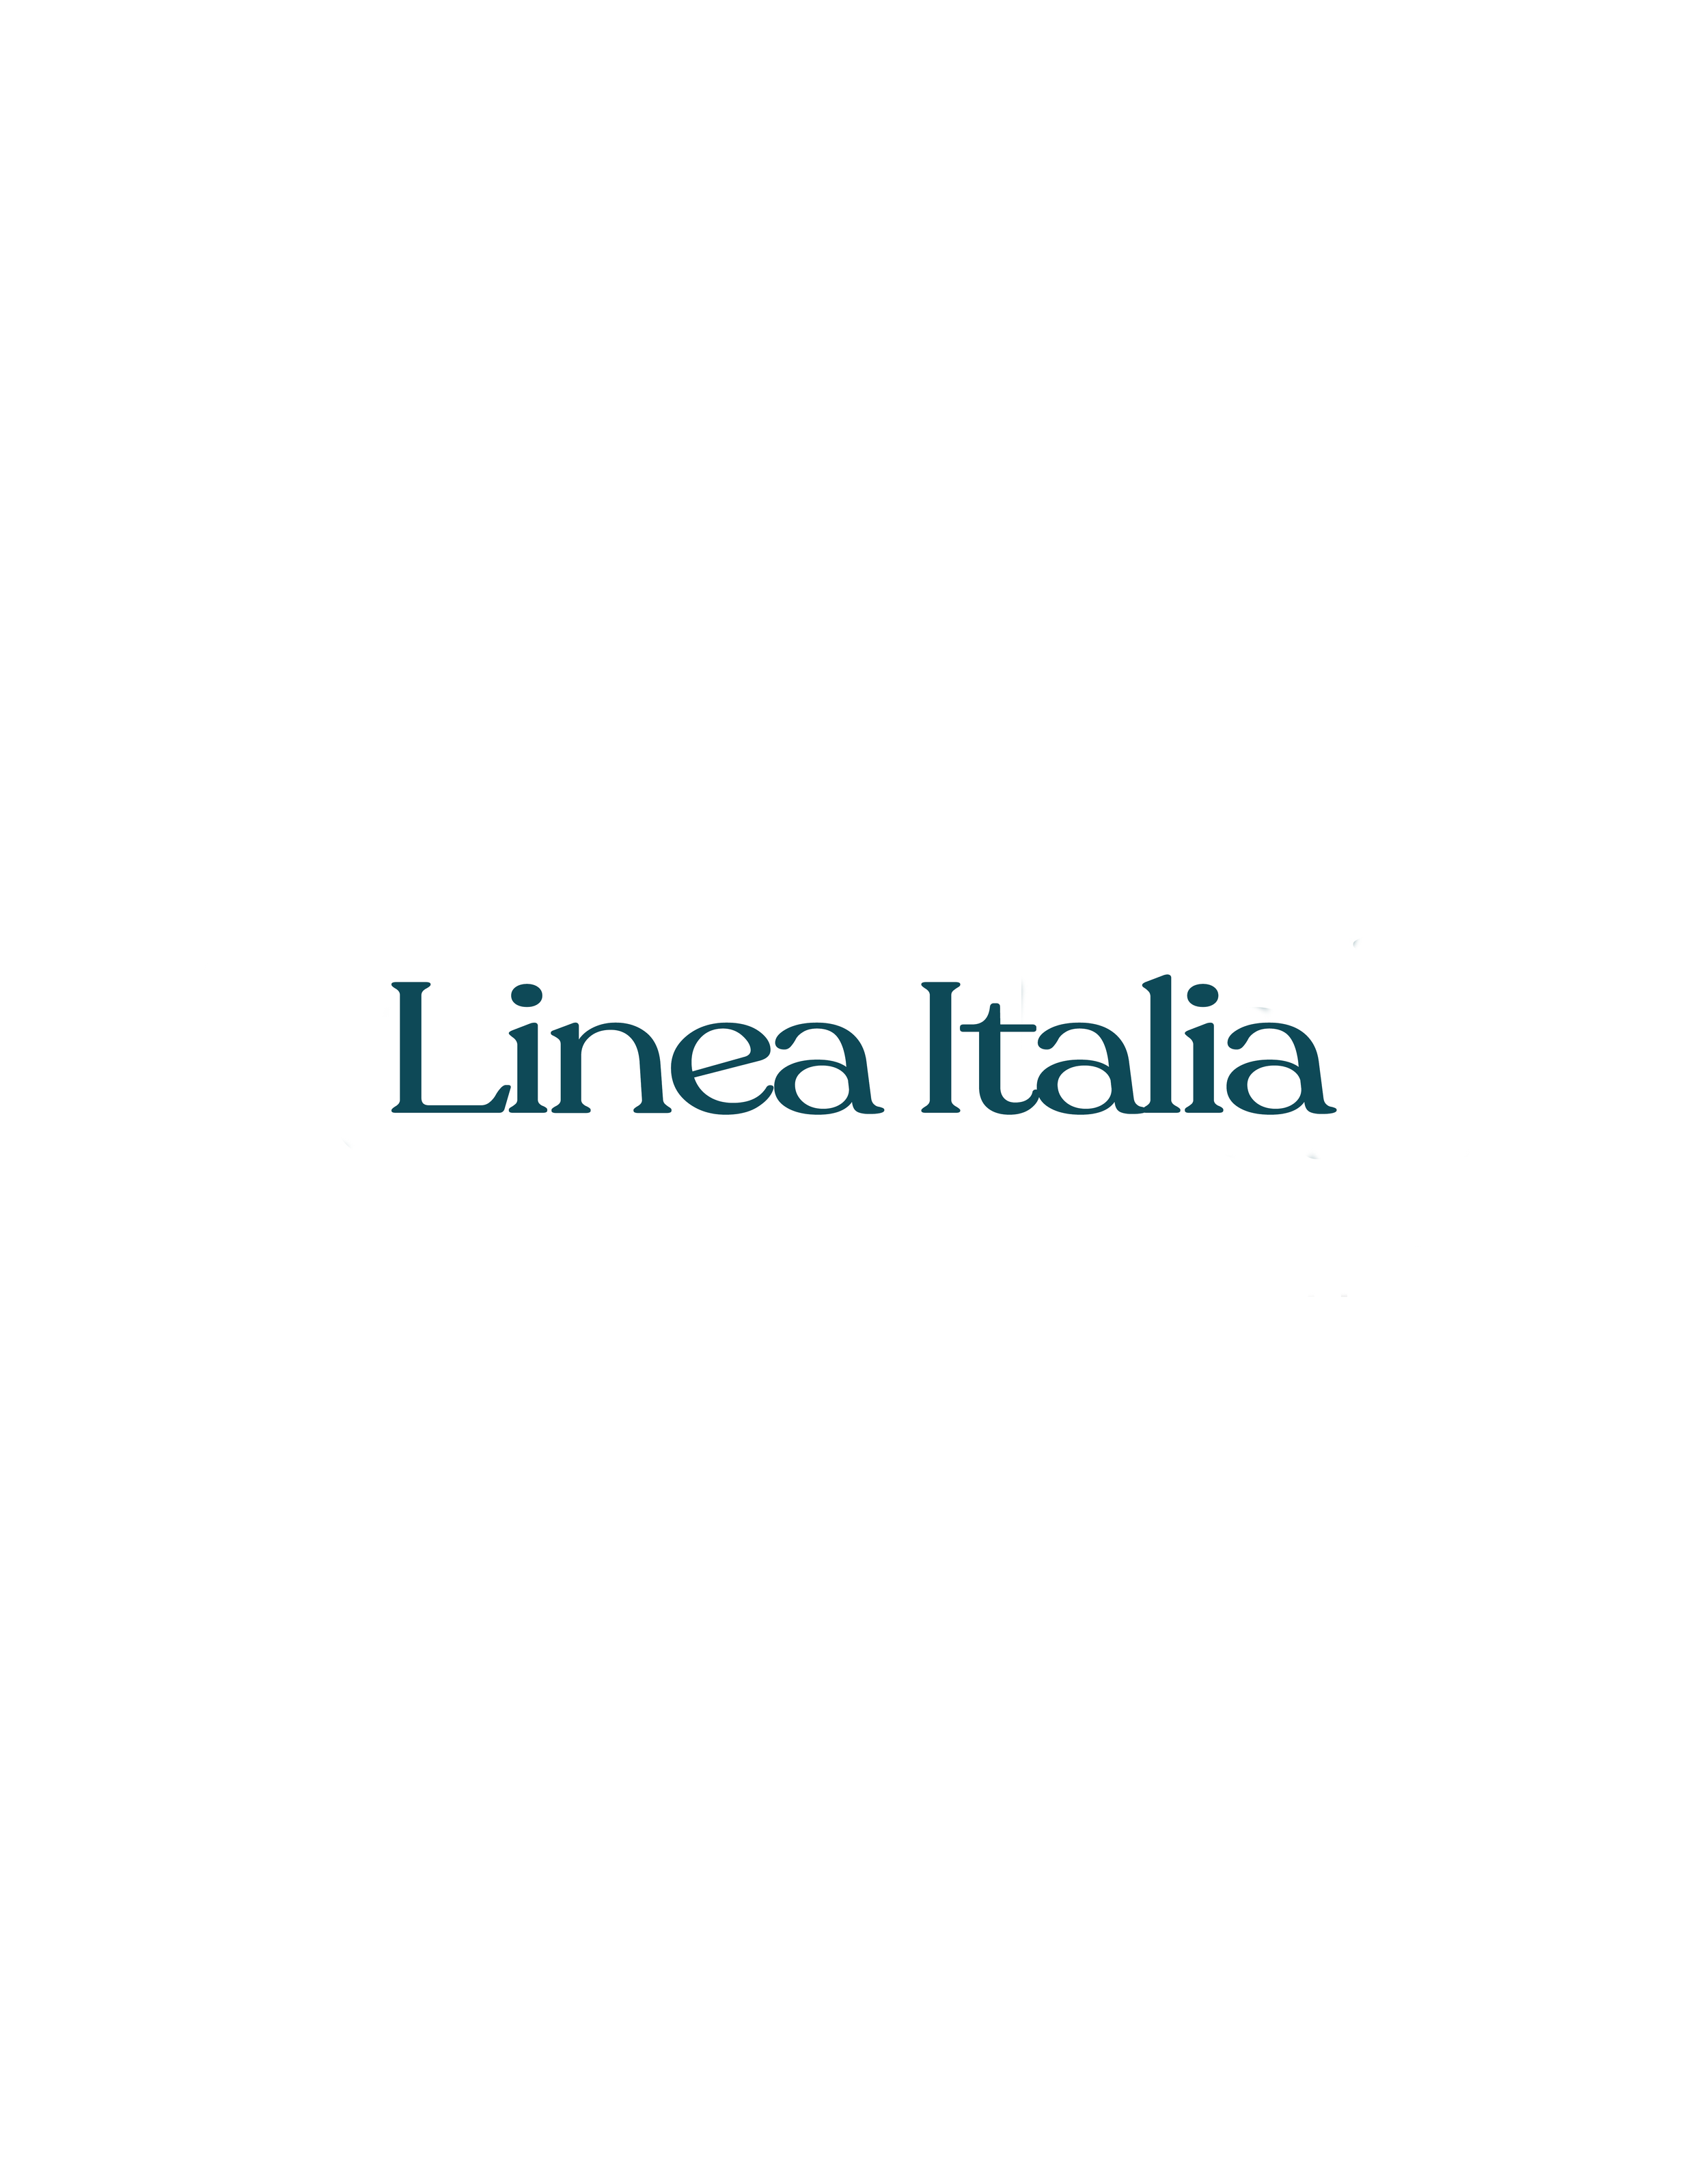 Linea Italia.png